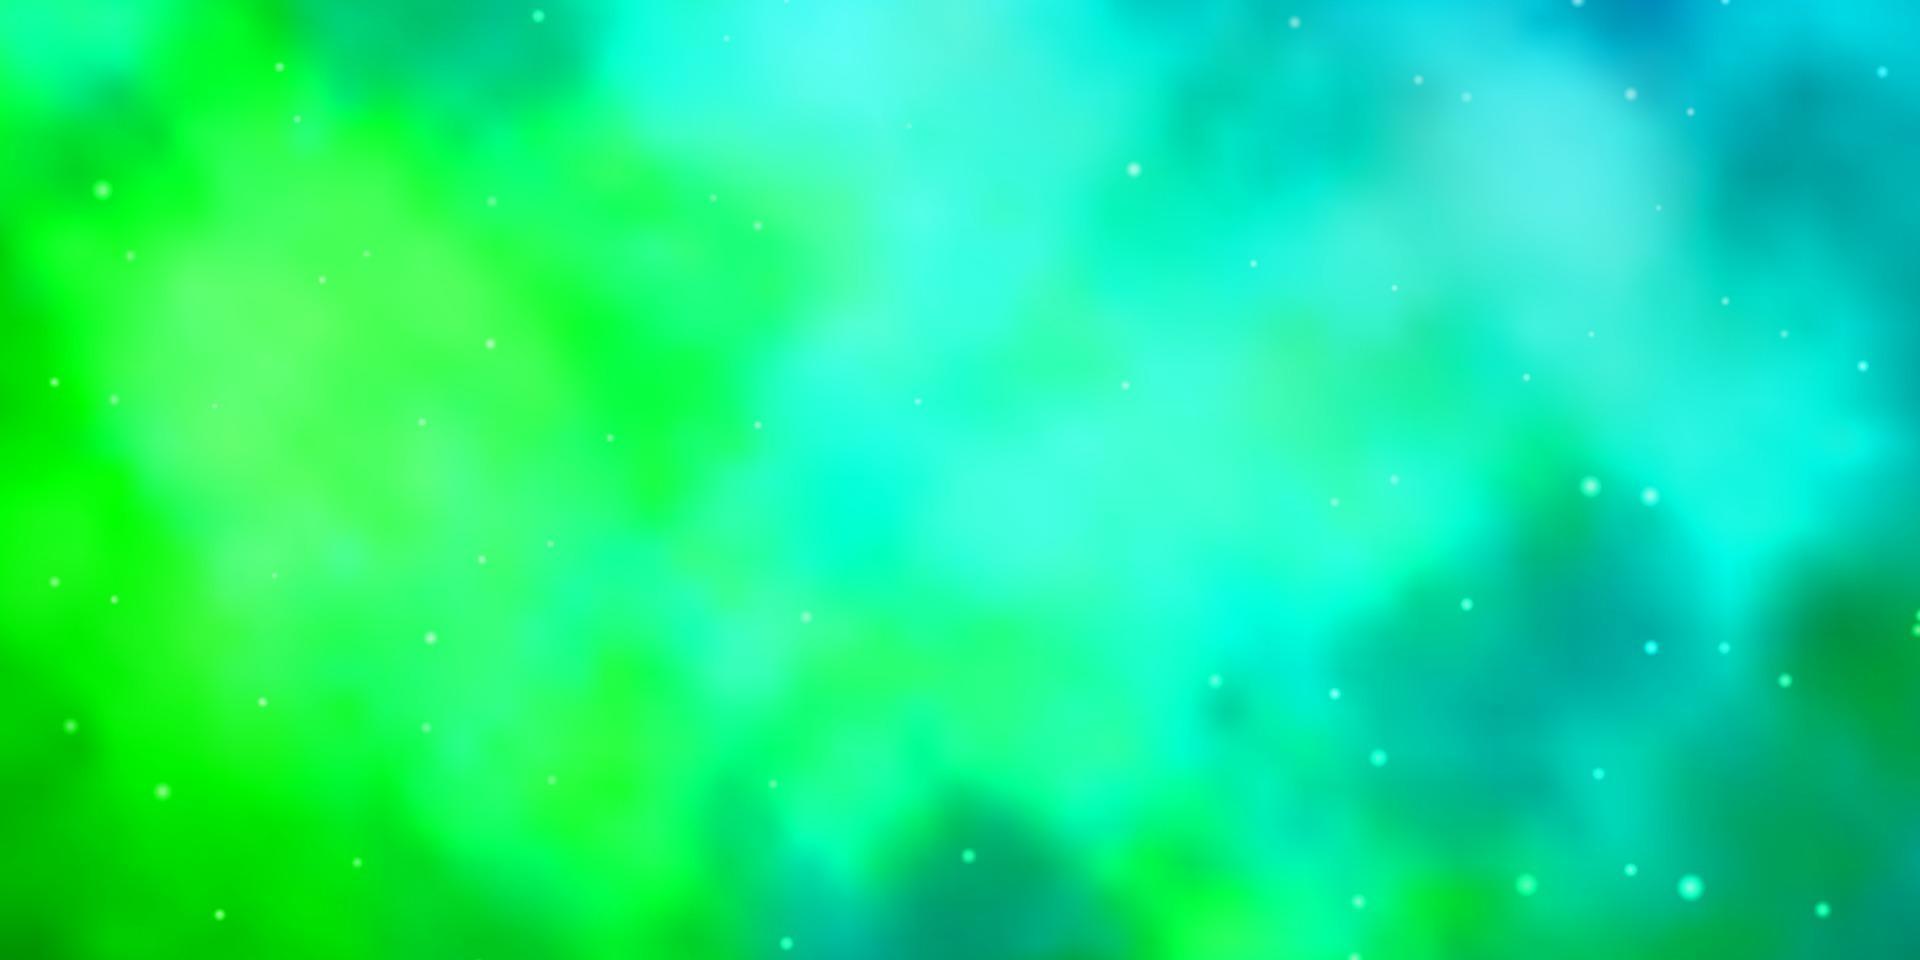 ljusblå, grön vektormall med neonstjärnor. vektor